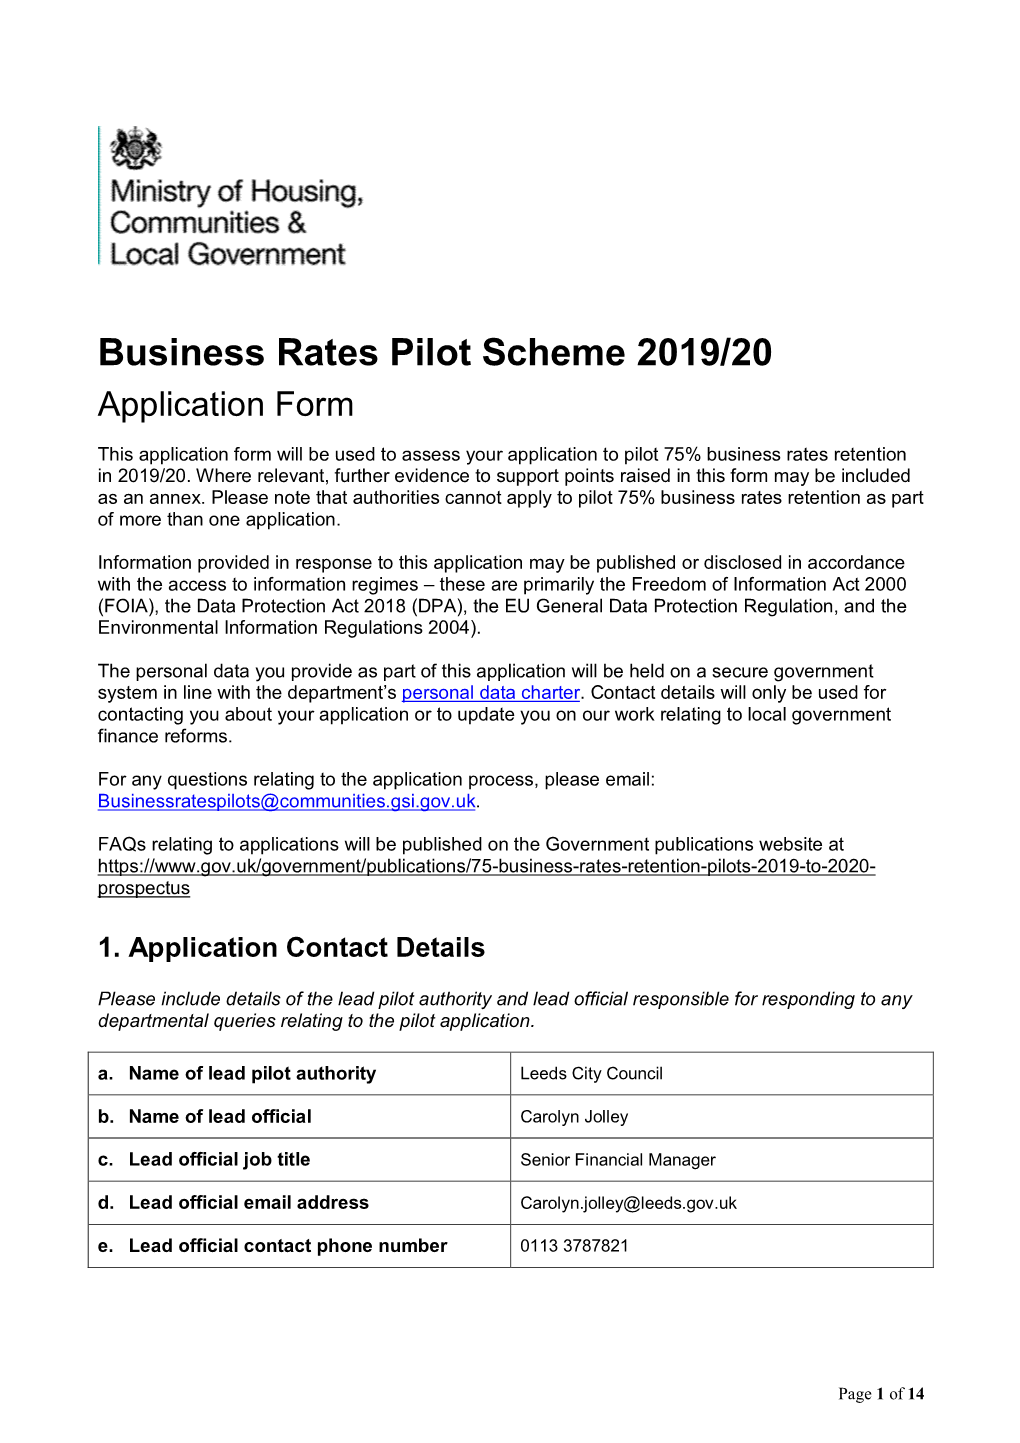 Business Rates Pilot Scheme 2019/20 Application Form